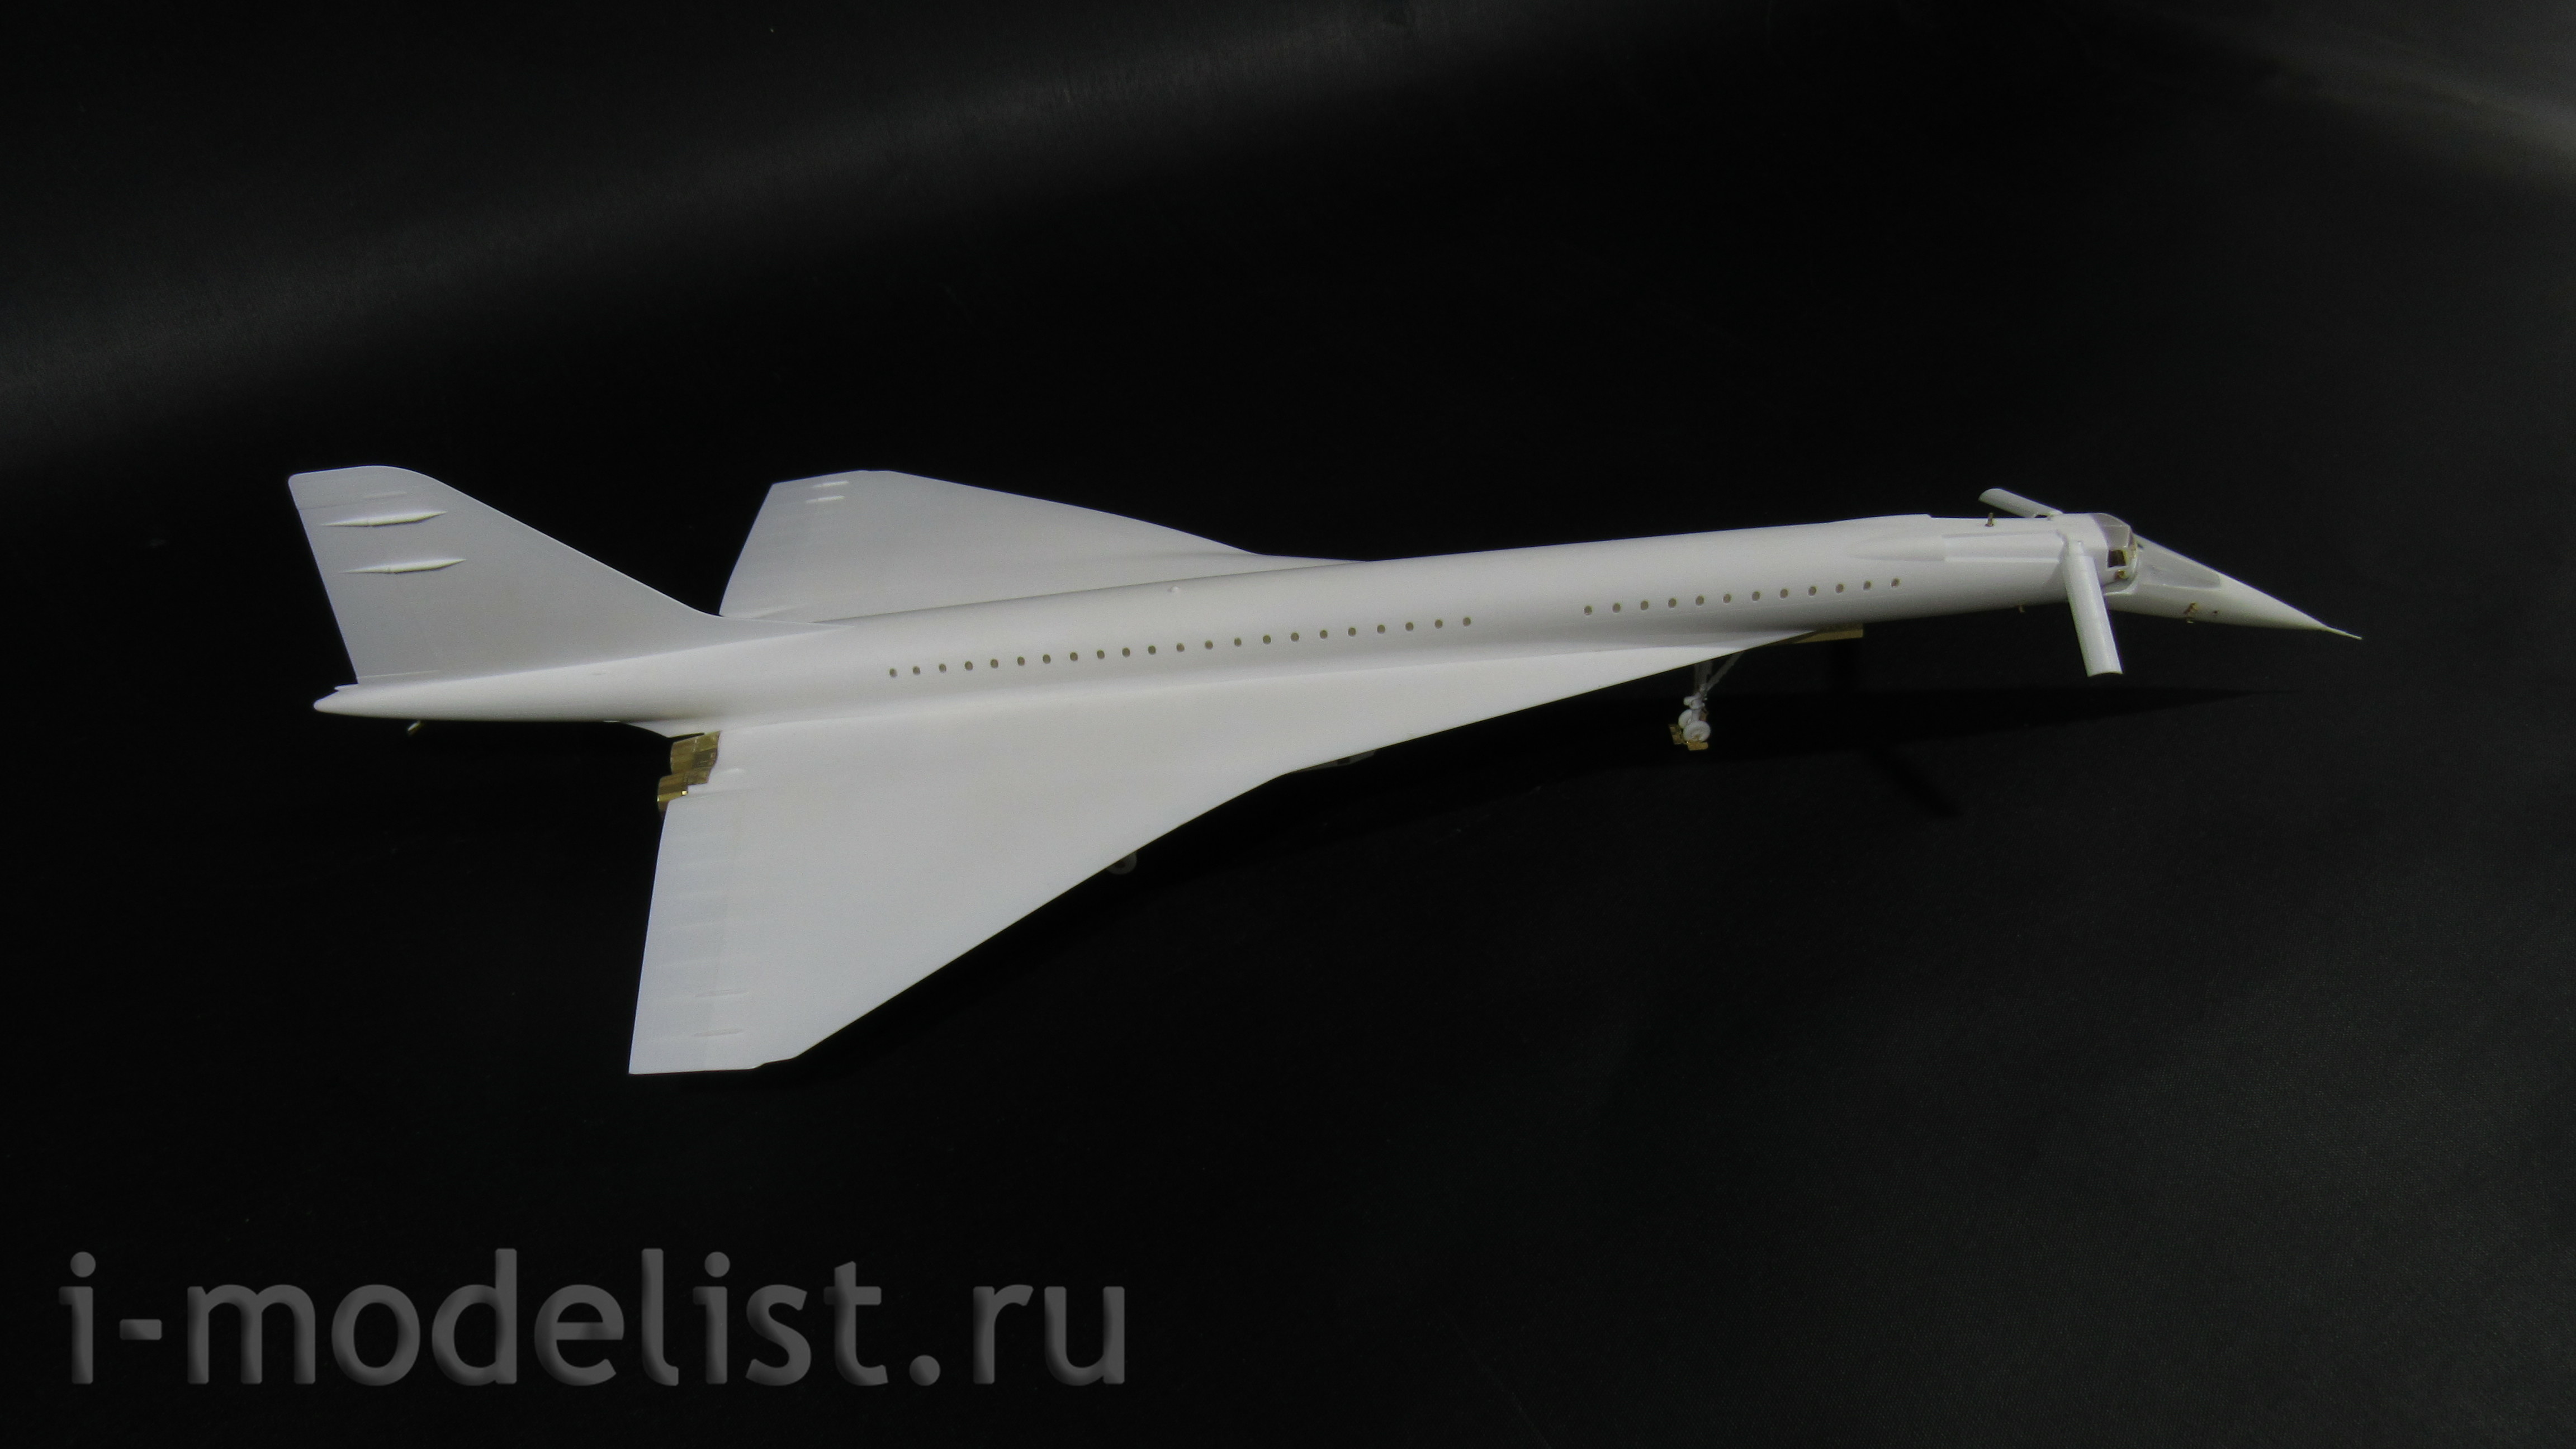 144229 Микродизайн 1/144 Набор фототравления для модели Туполев-144 (экстерьер) от ICM